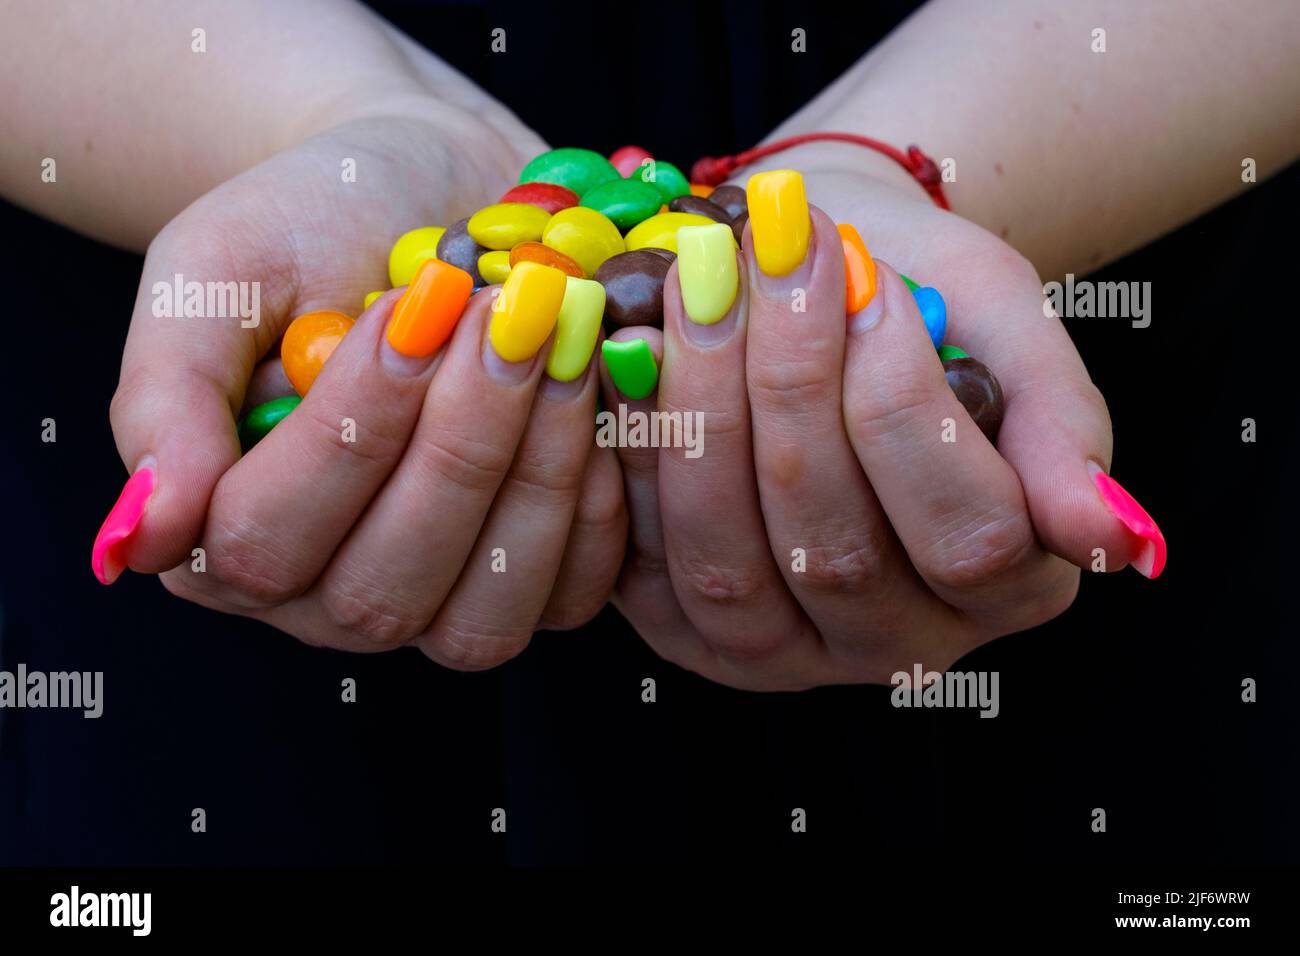 mujer con extensiones de uña pintada en variedad de colores sosteniendo coloridos dulces Foto de stock